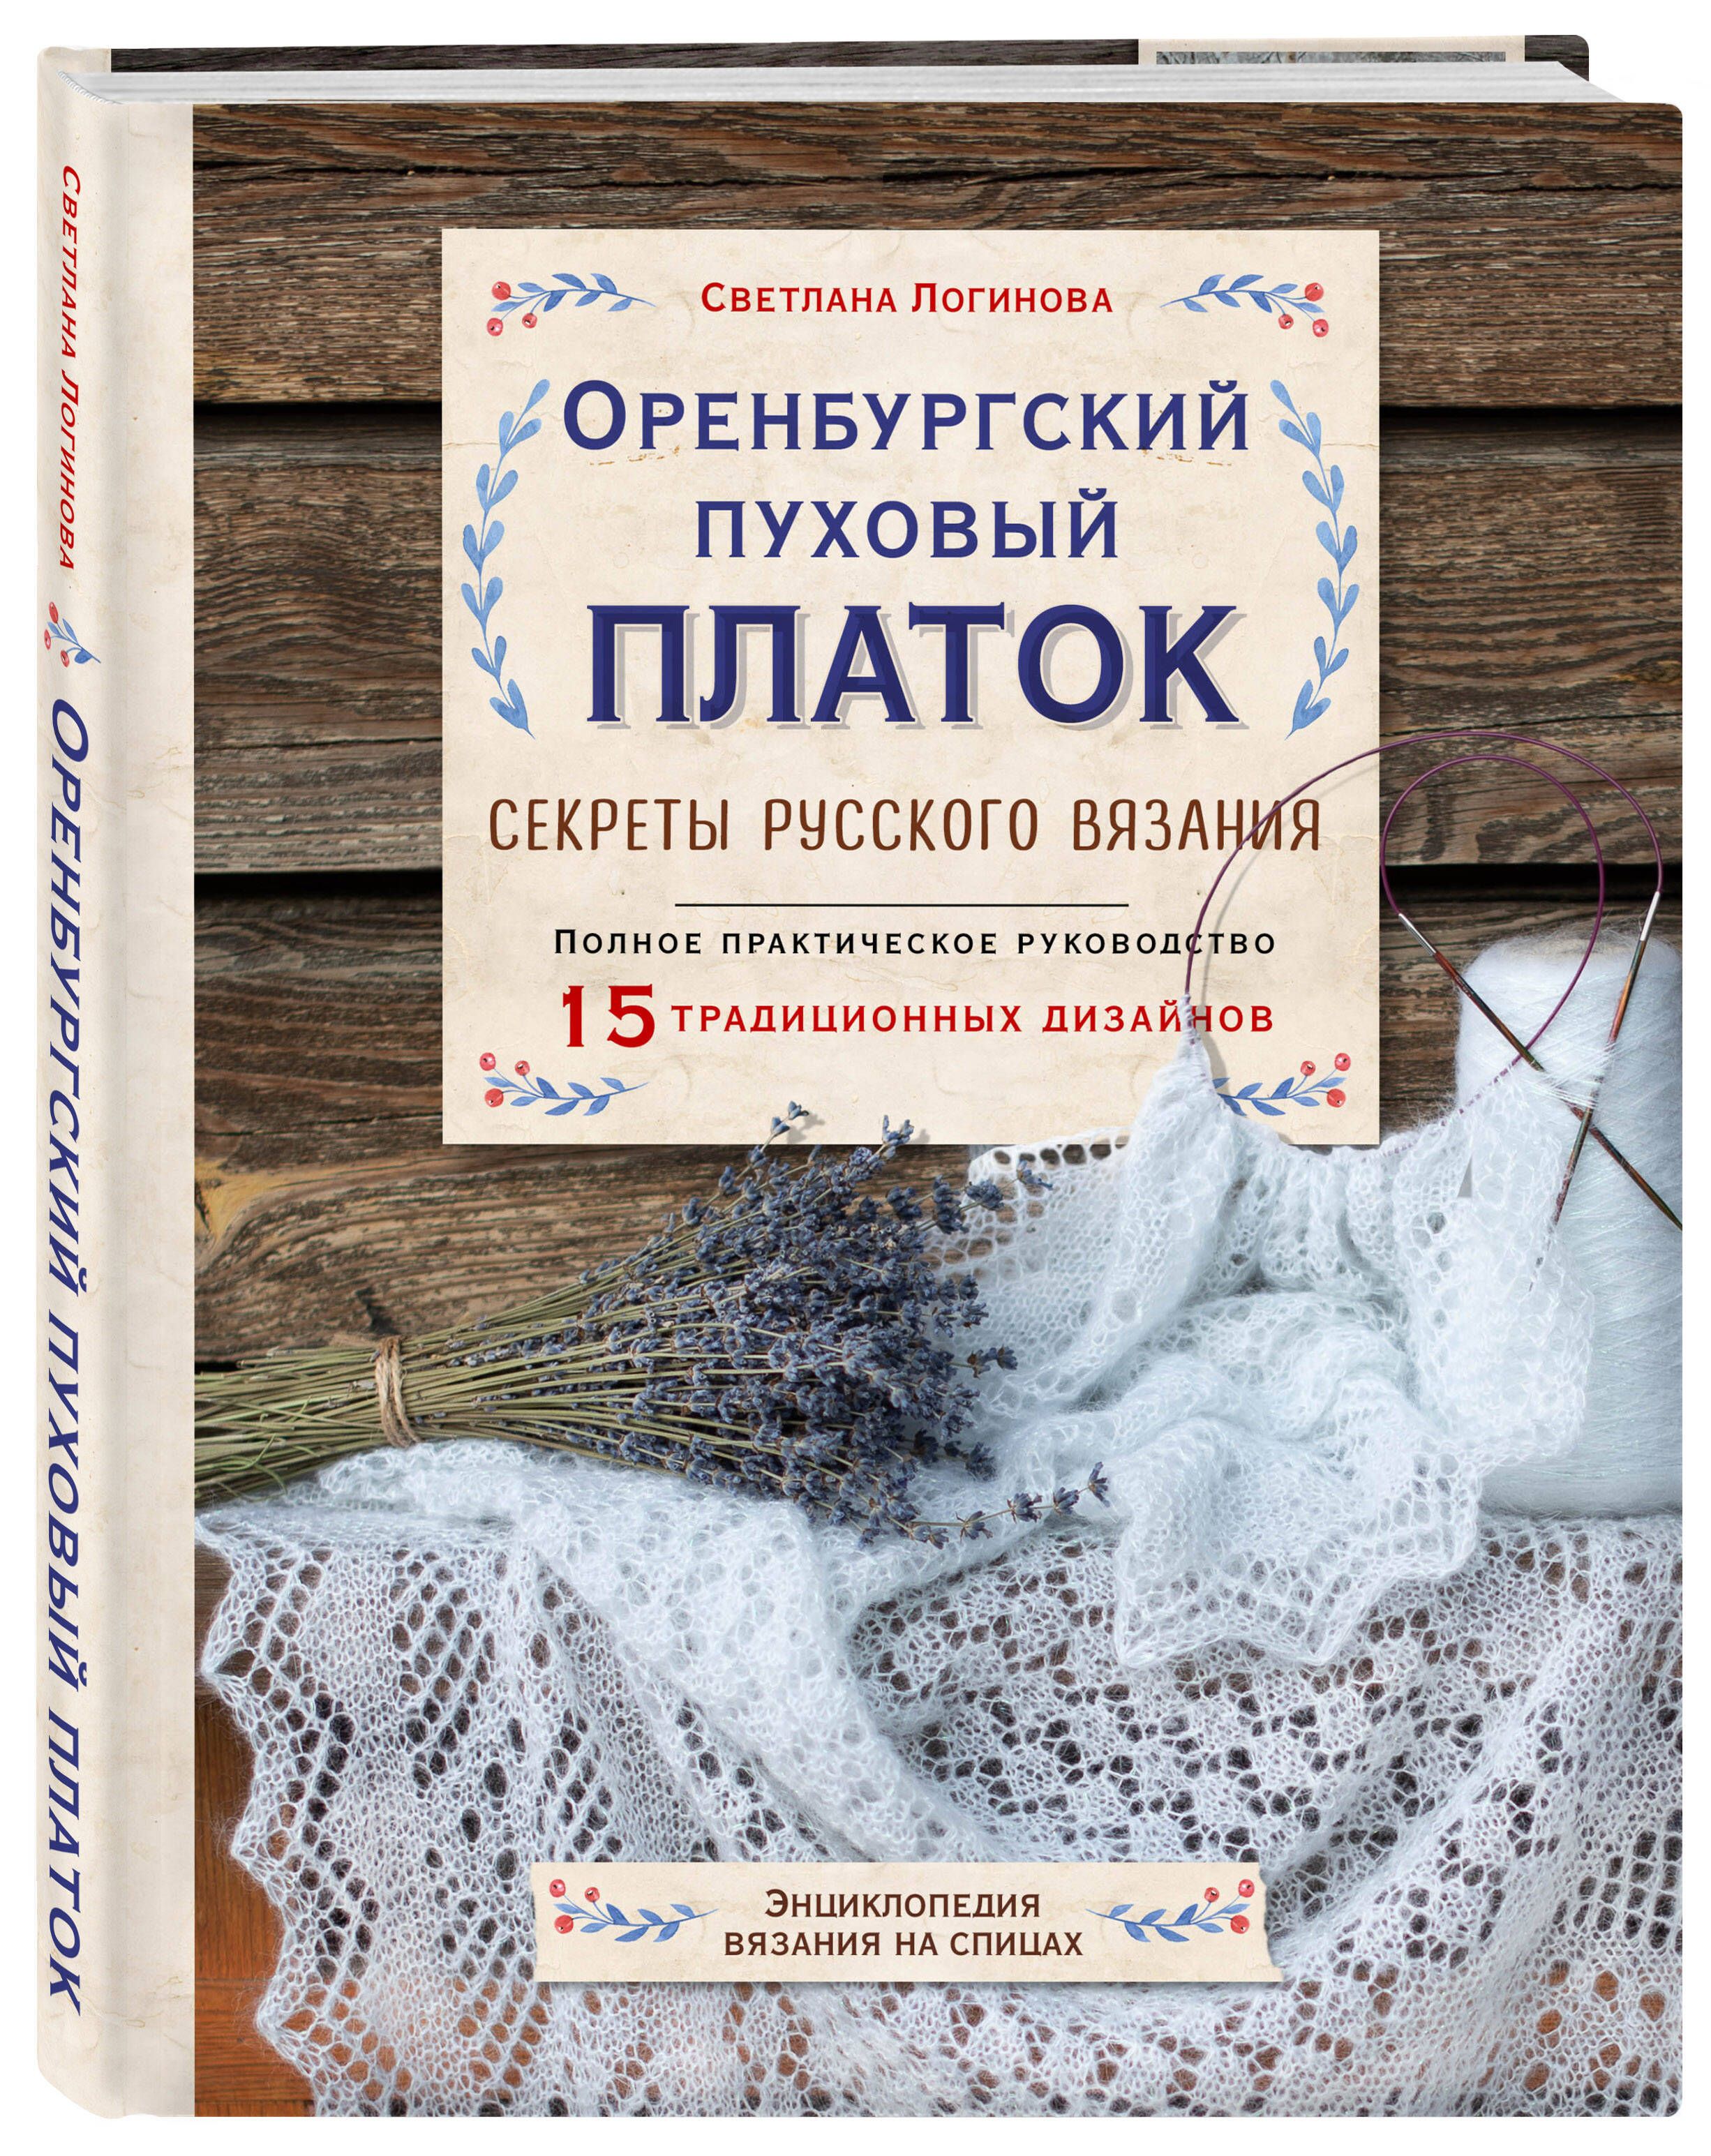 Схема вязания оренбургского пухового платка | Оренбургский пухо�вый платок | Блог о вязании